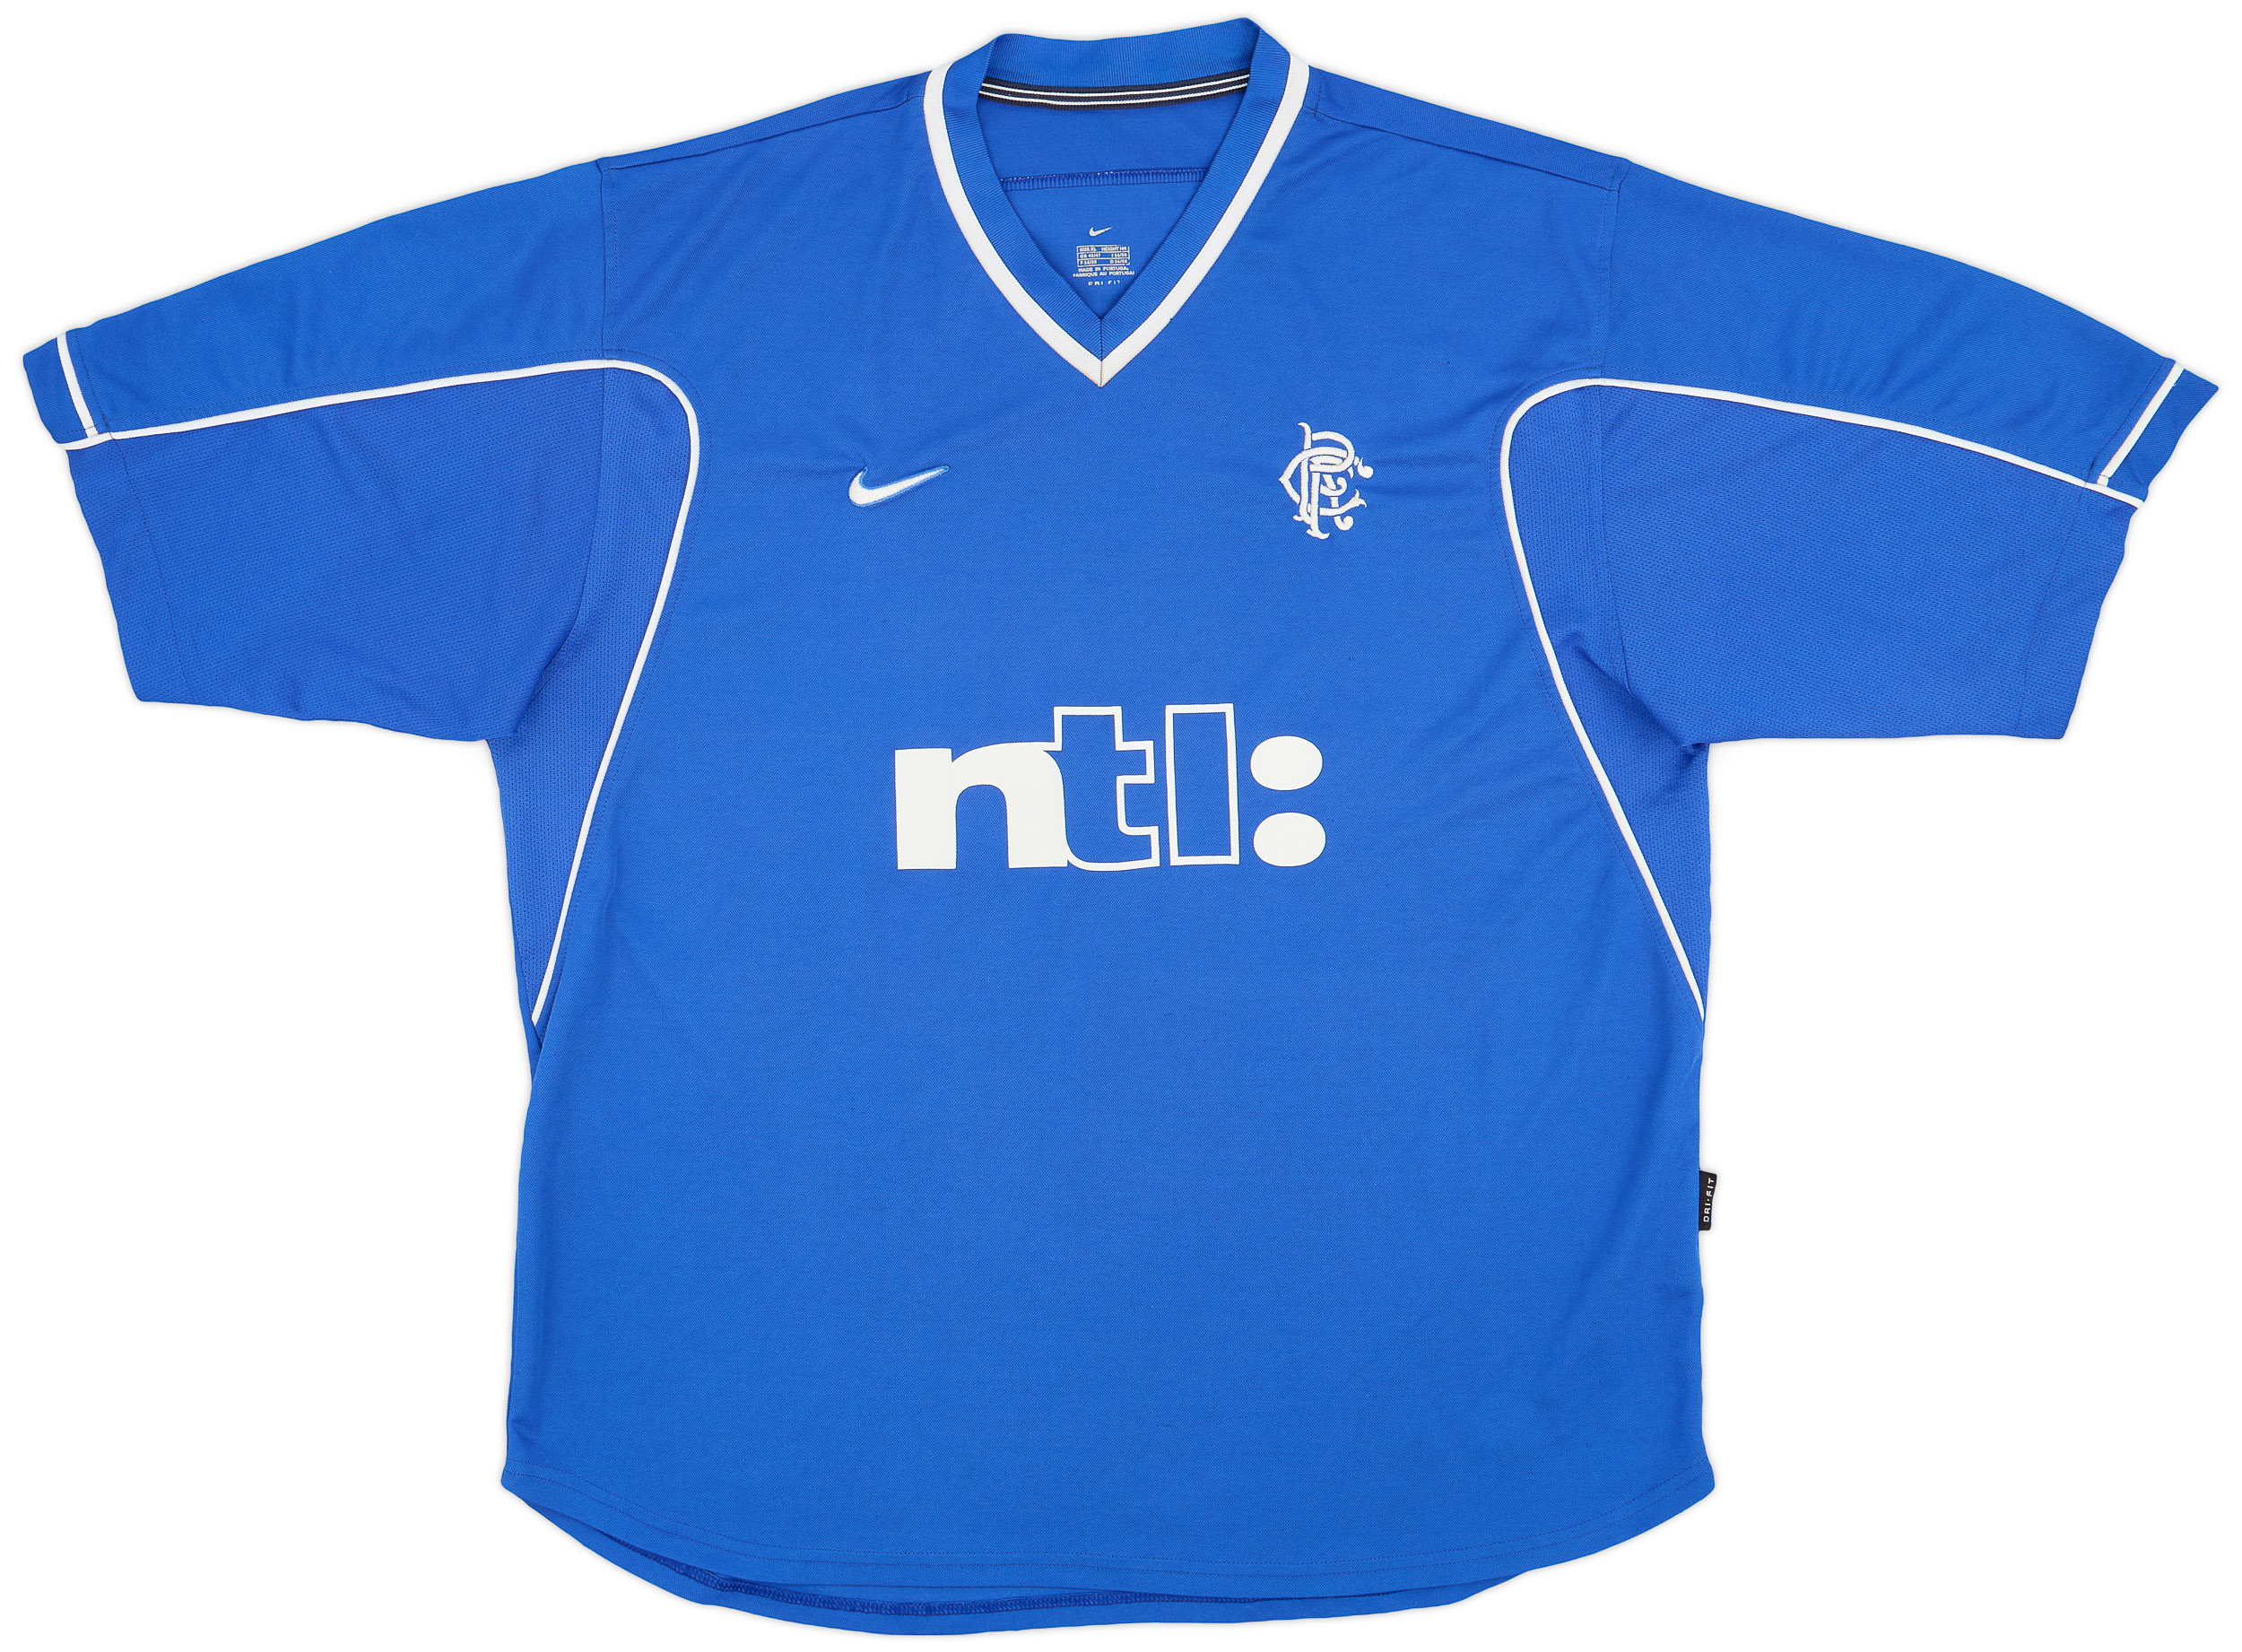 1999-01 Rangers Home Shirt - 9/10 - ()